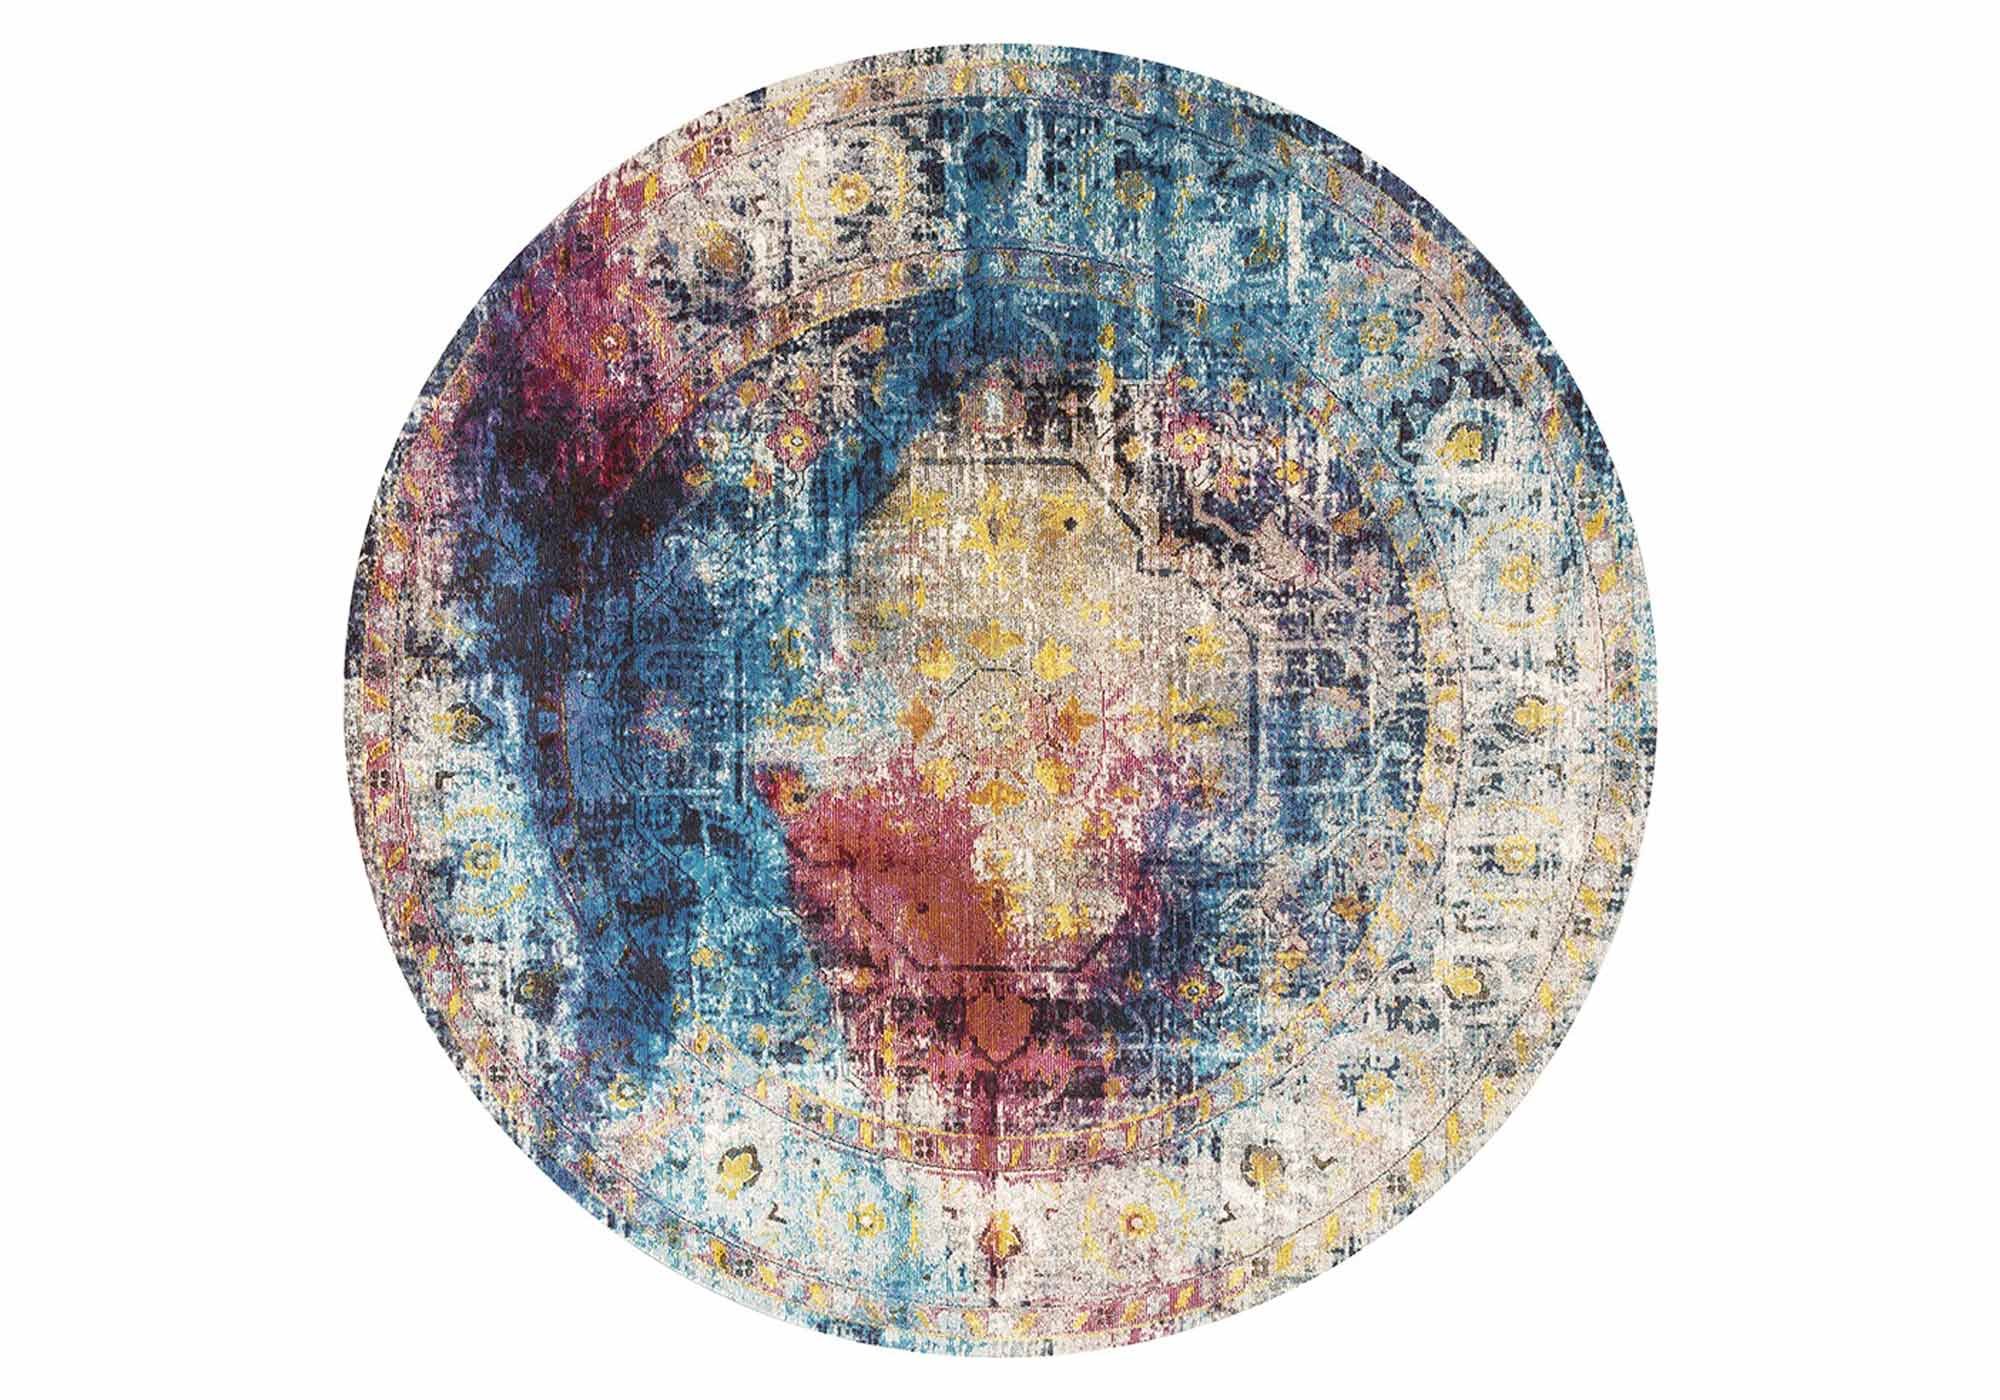 Festival Teppich - rund - 200 cm - mehrfarbig - Picasso 602 Heriz